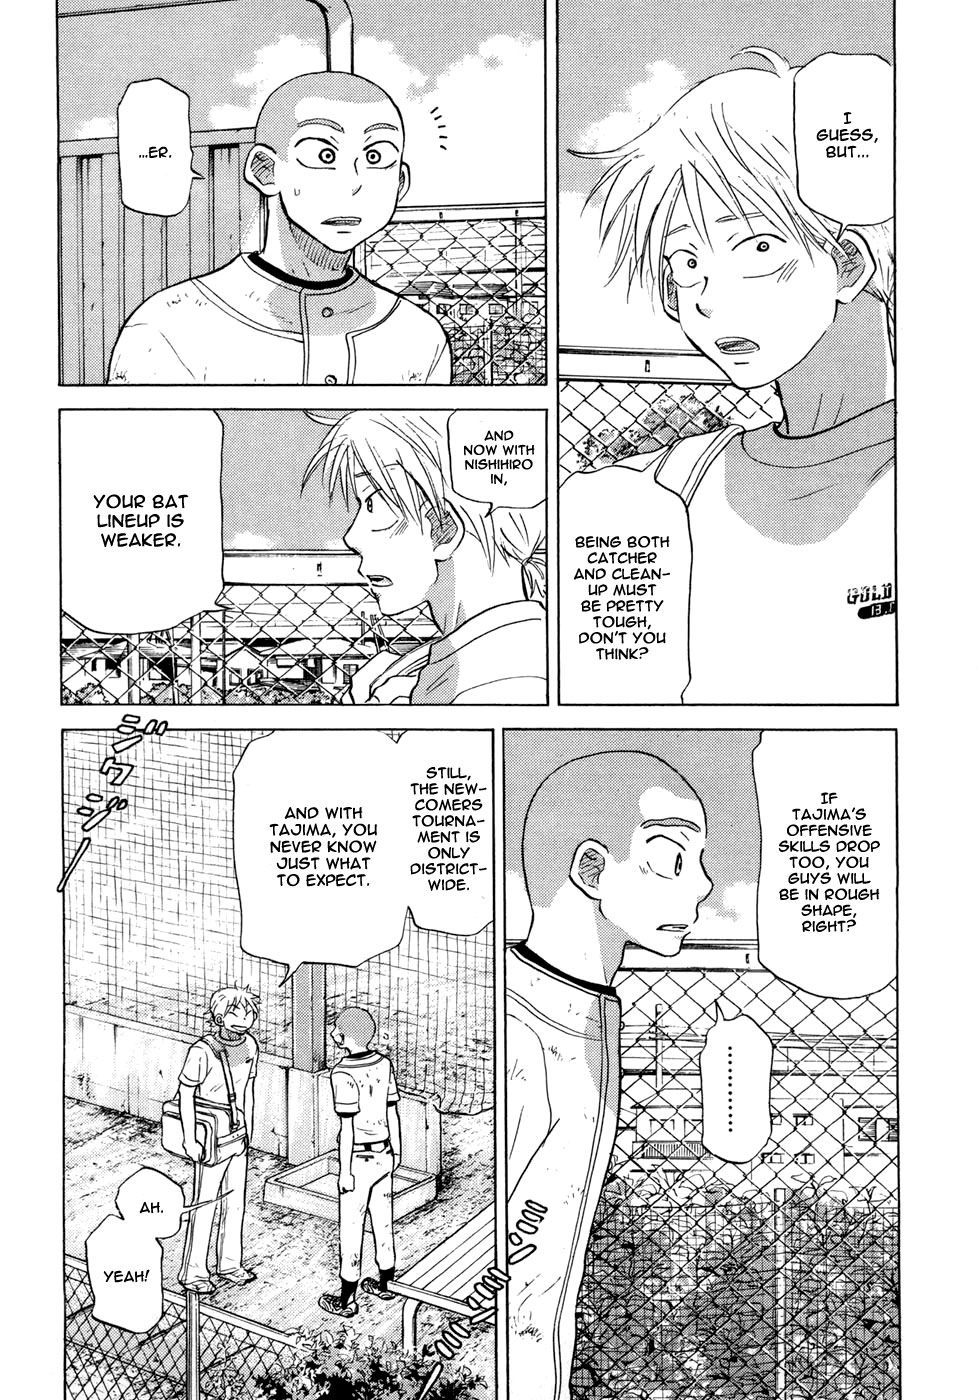 Ookiku Furikabutte - 028b page p_00010